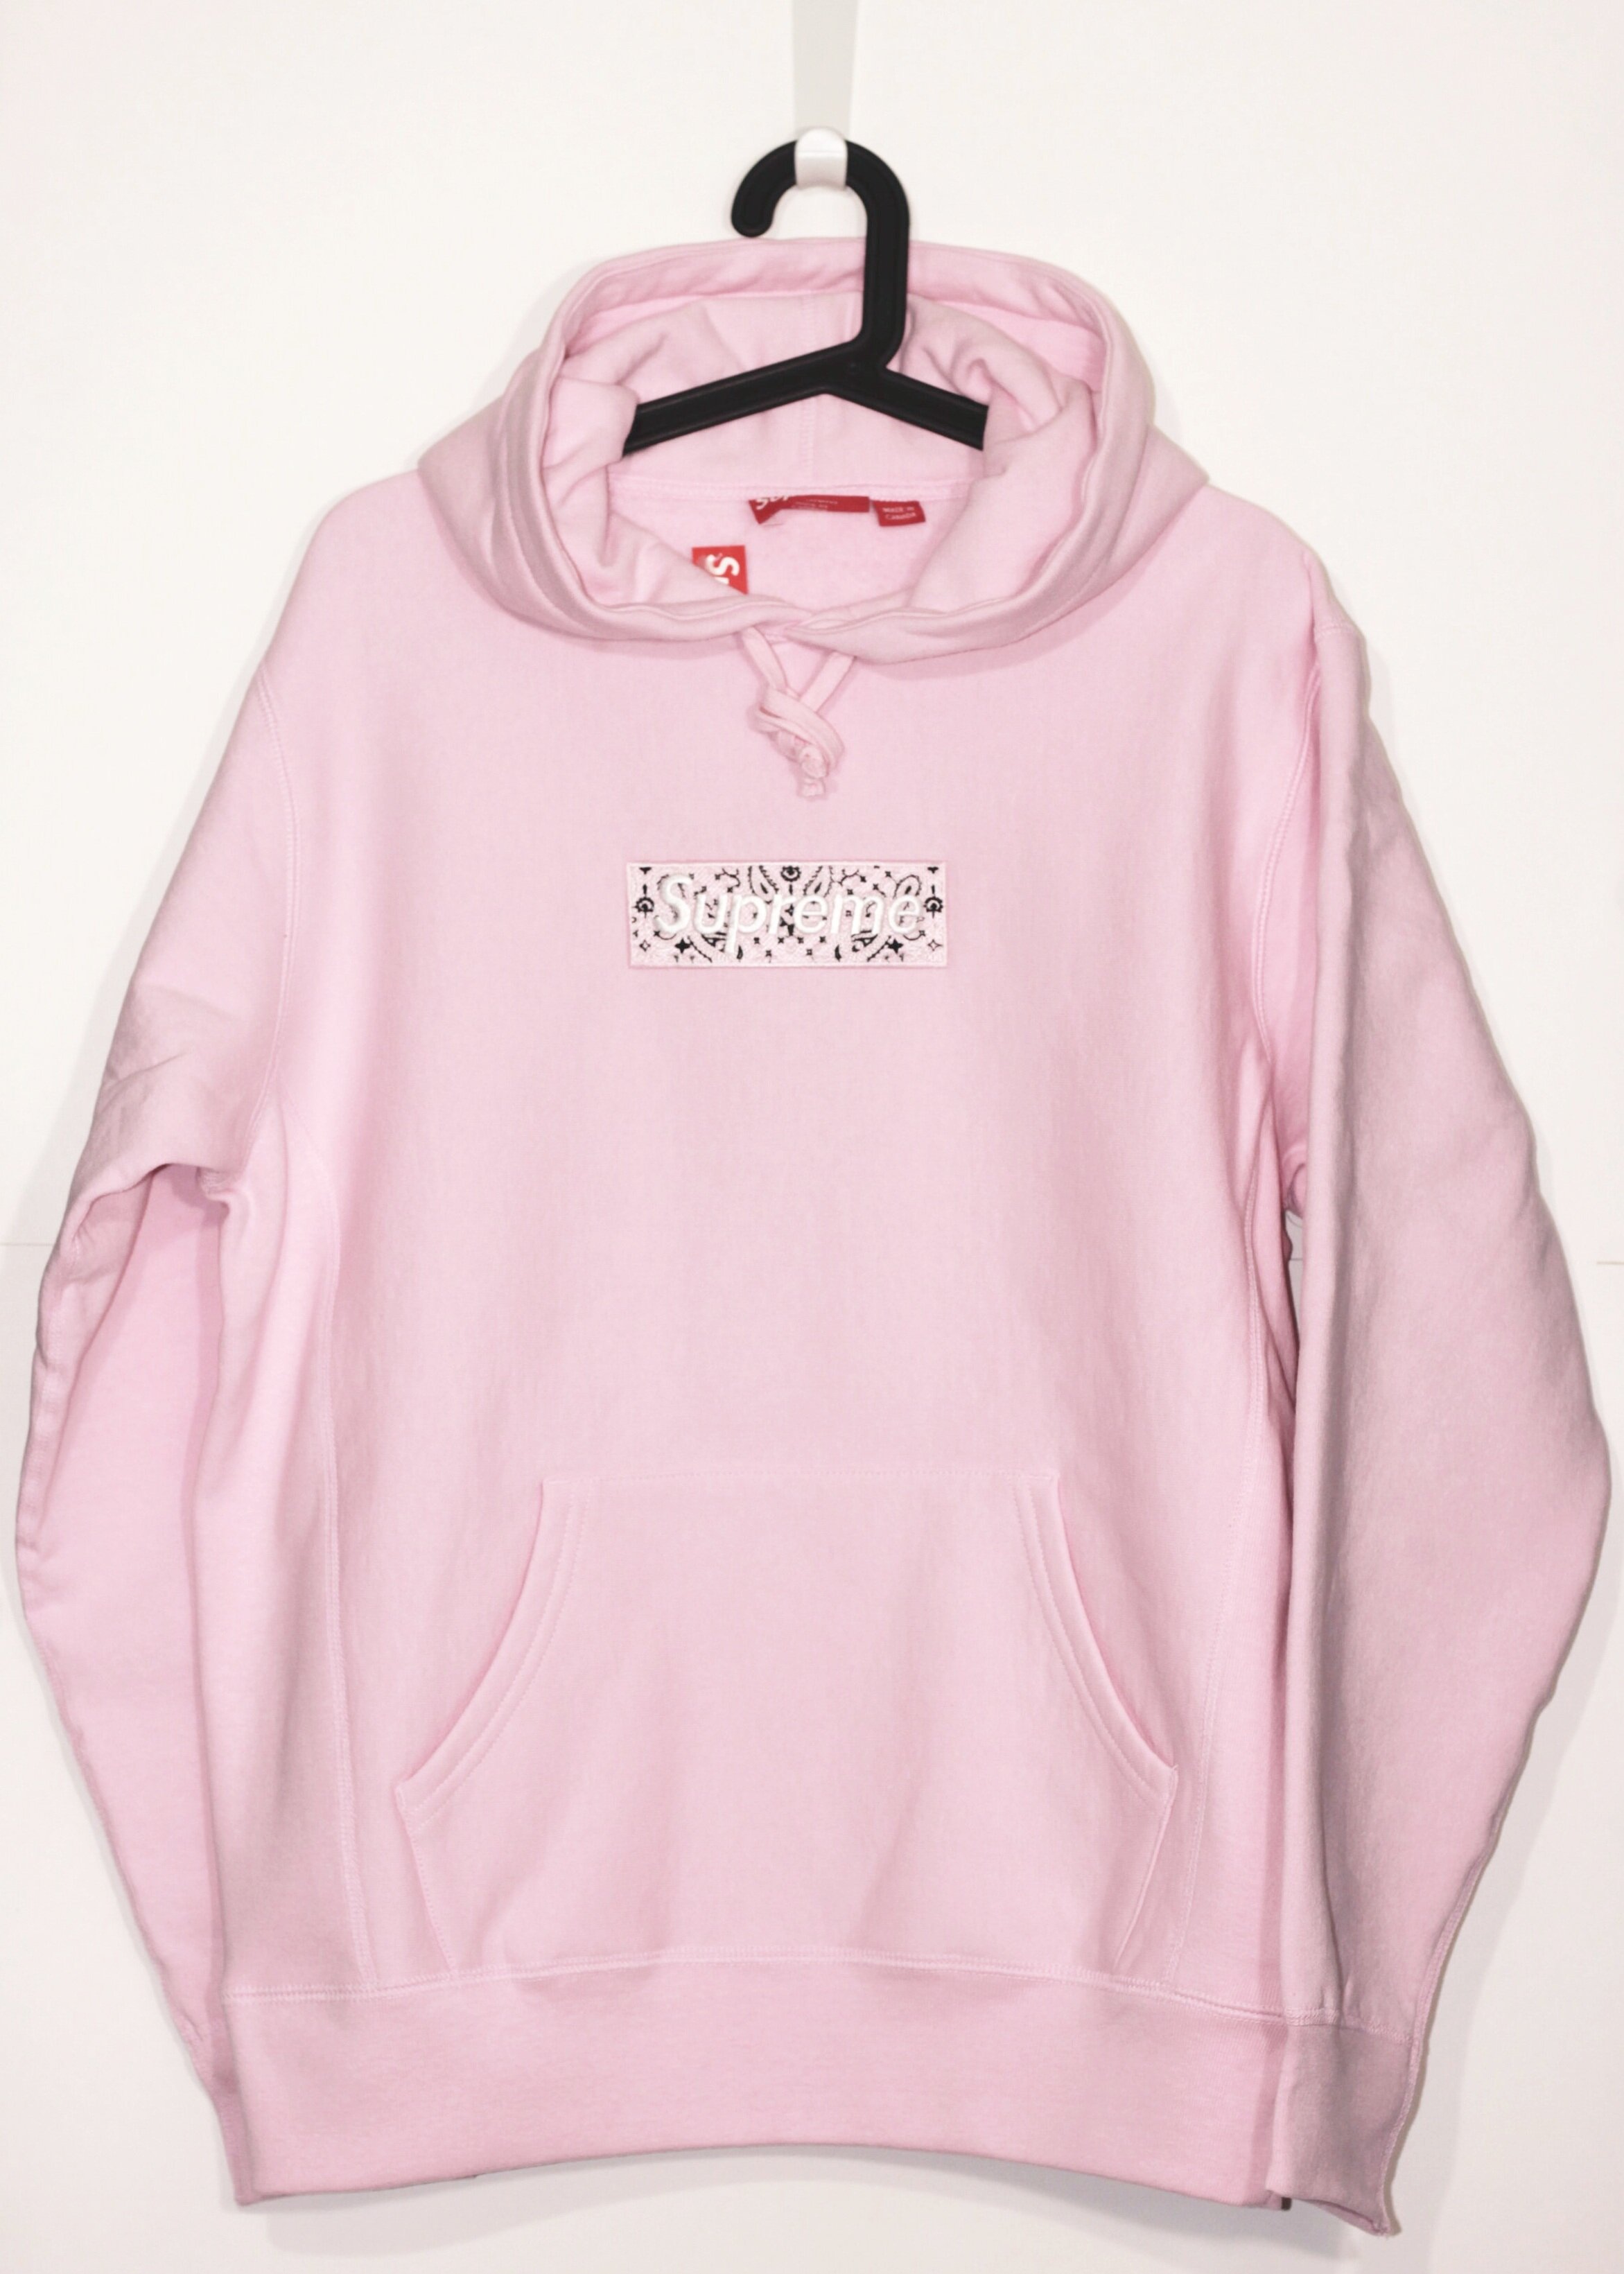 >supreme bandana logo hooded sweatshirt pink sale - OFF 71%